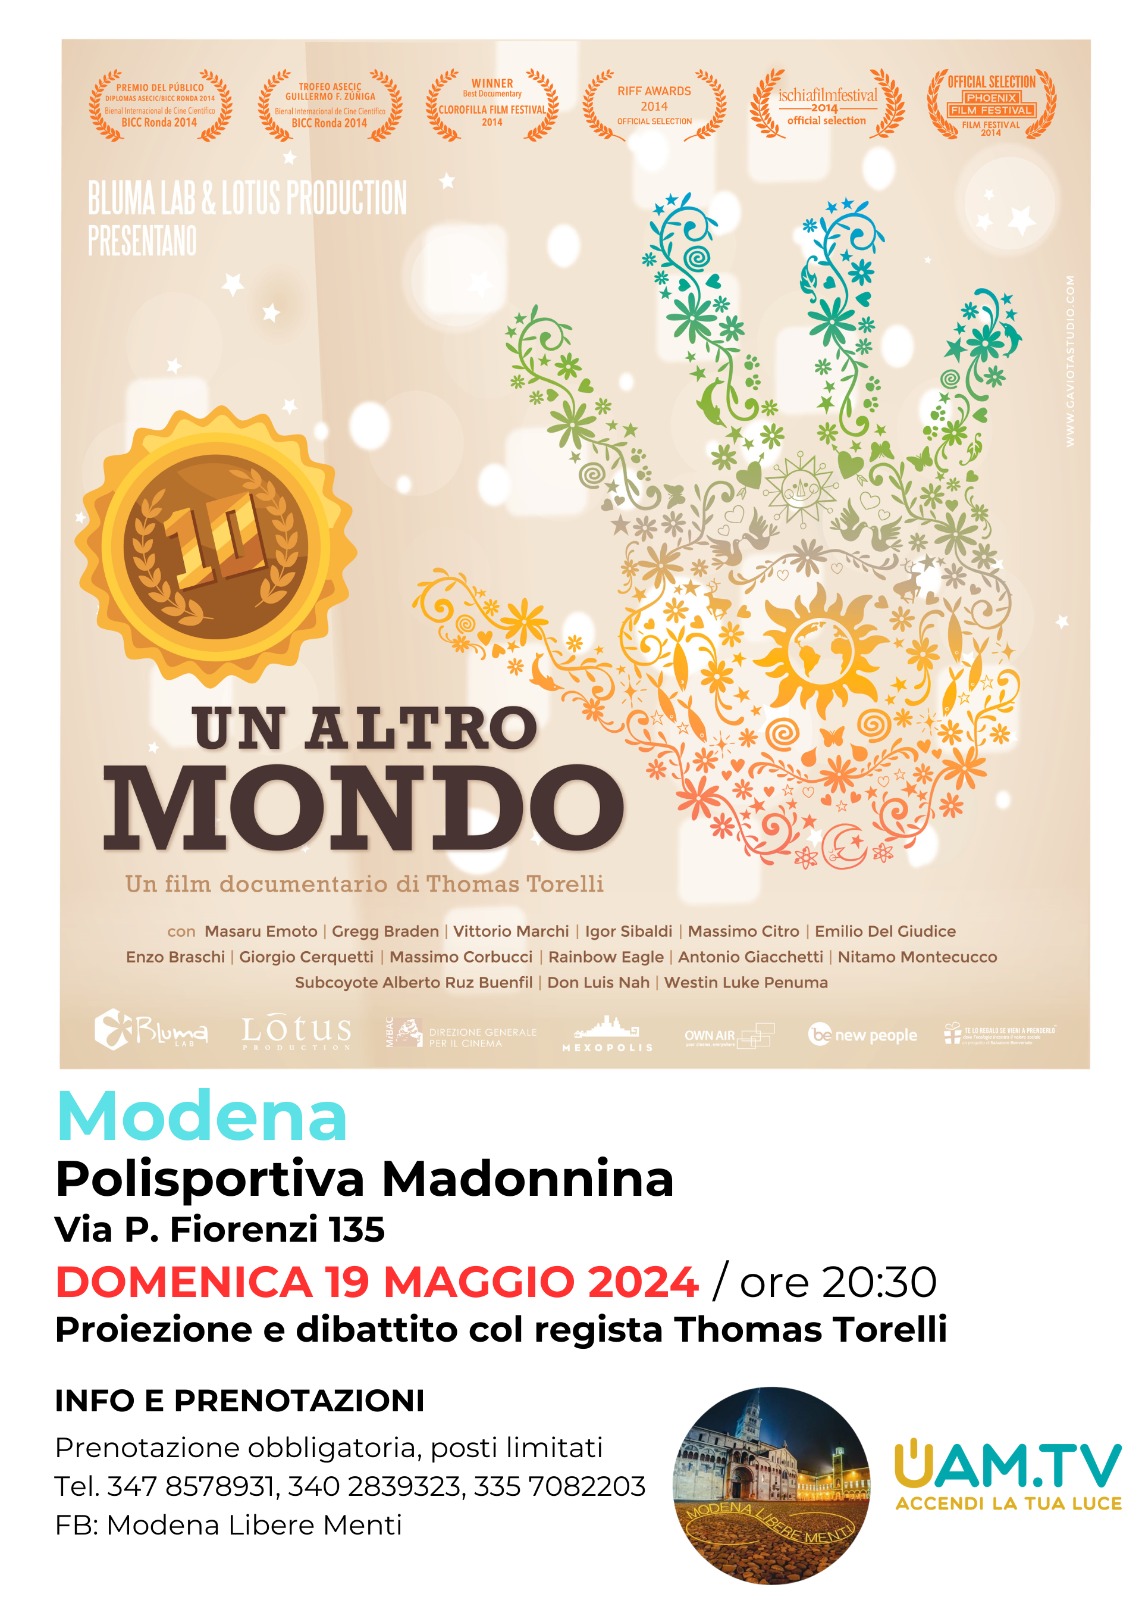 "Un altro mondo" - Polisportiva Madonnina - Modena